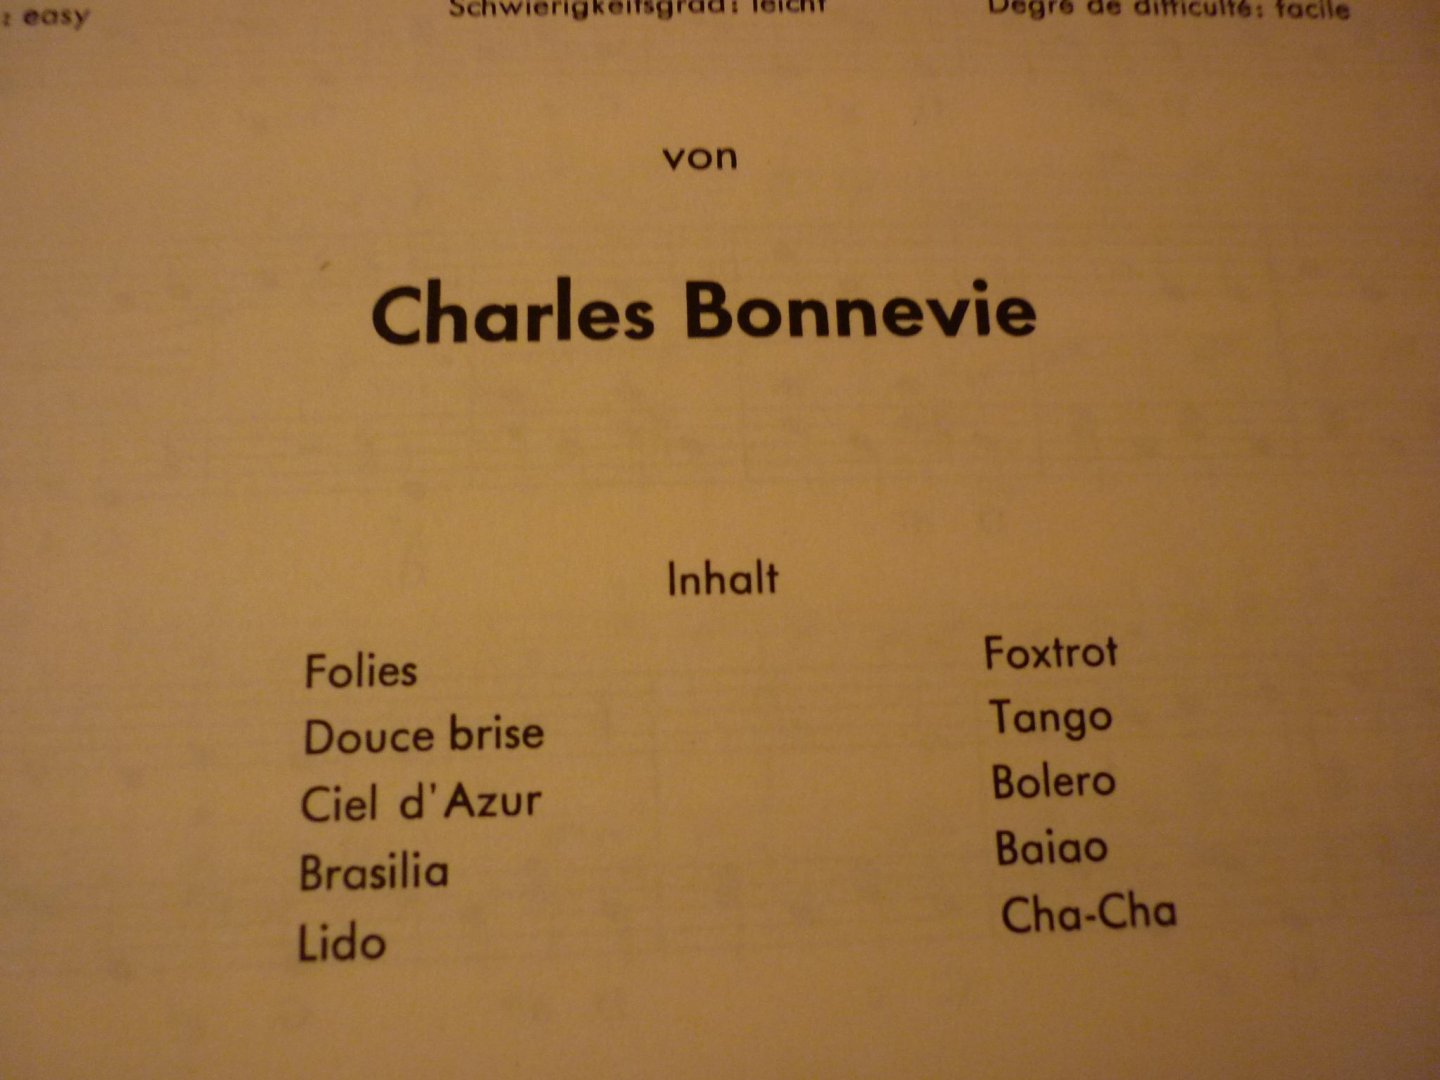 Bonnevie; Charles - Let's dance - Band I